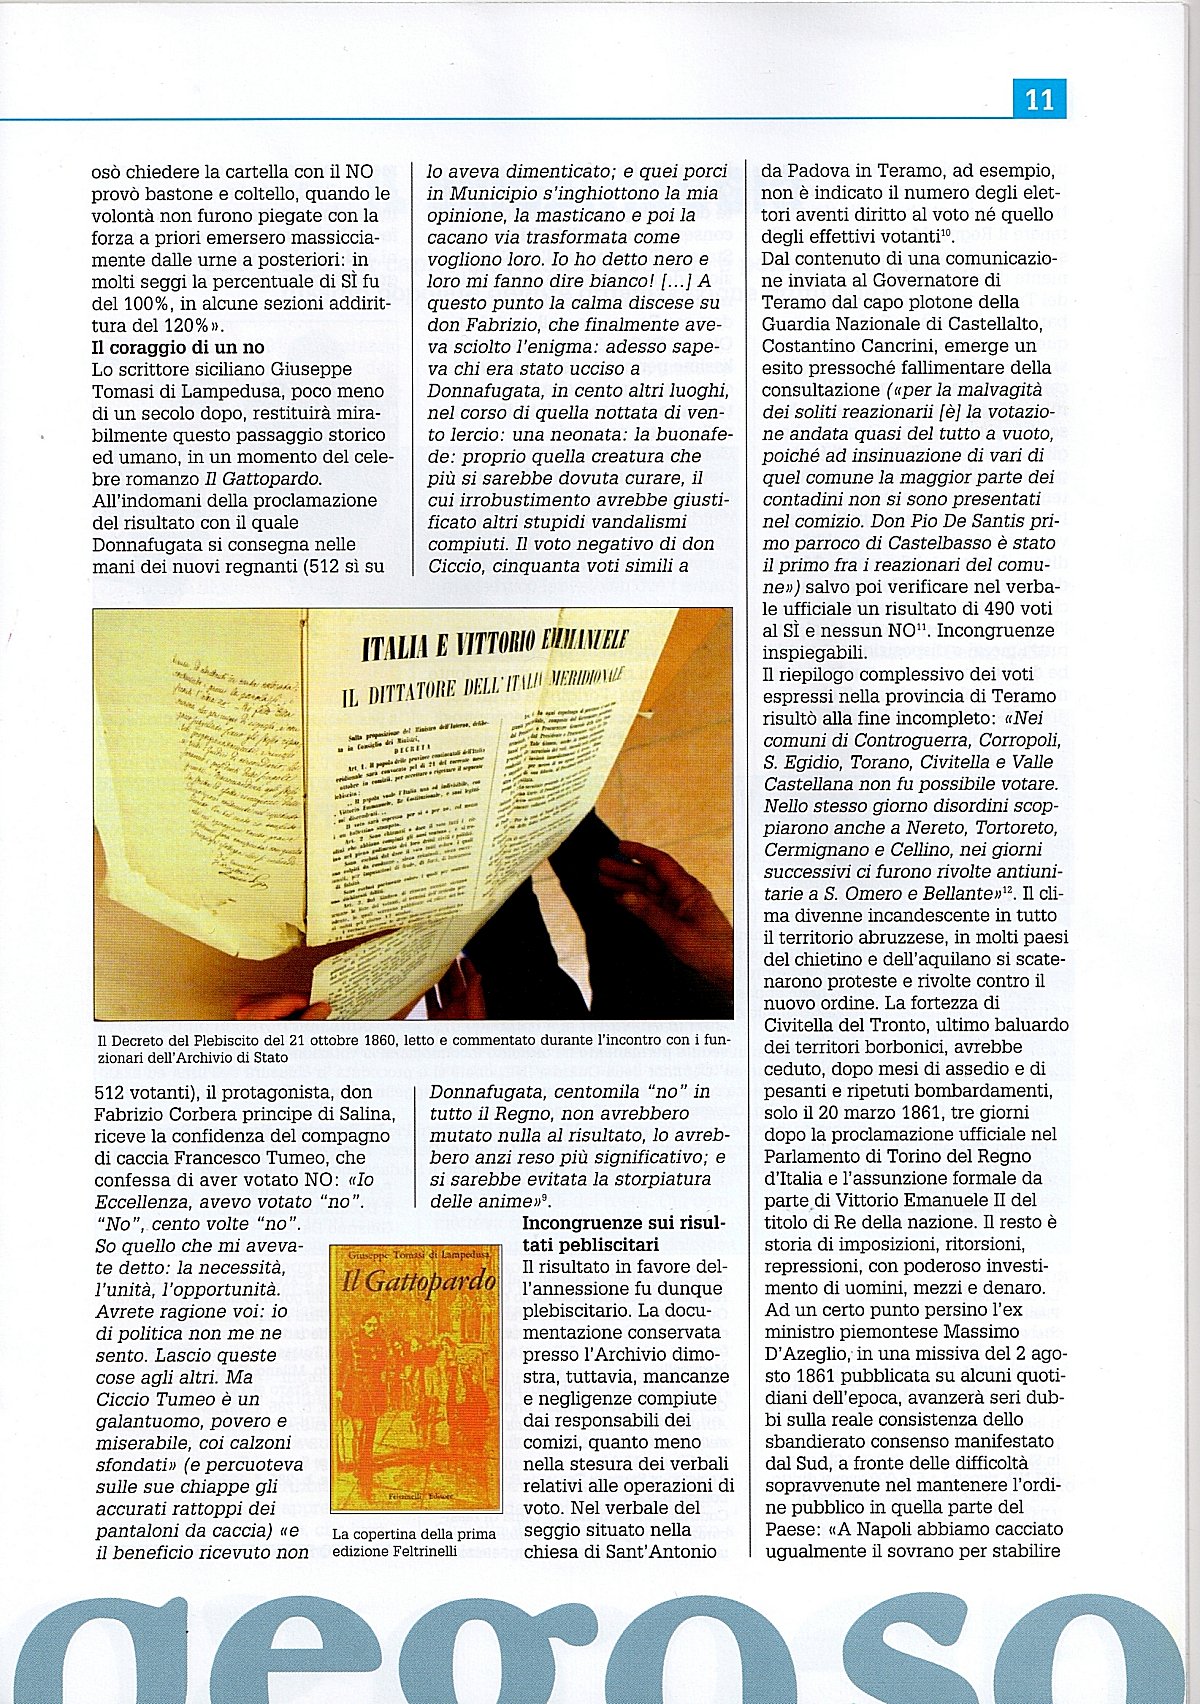 "Pegaso", n.15 / 21 maggio 2011, pag. 11